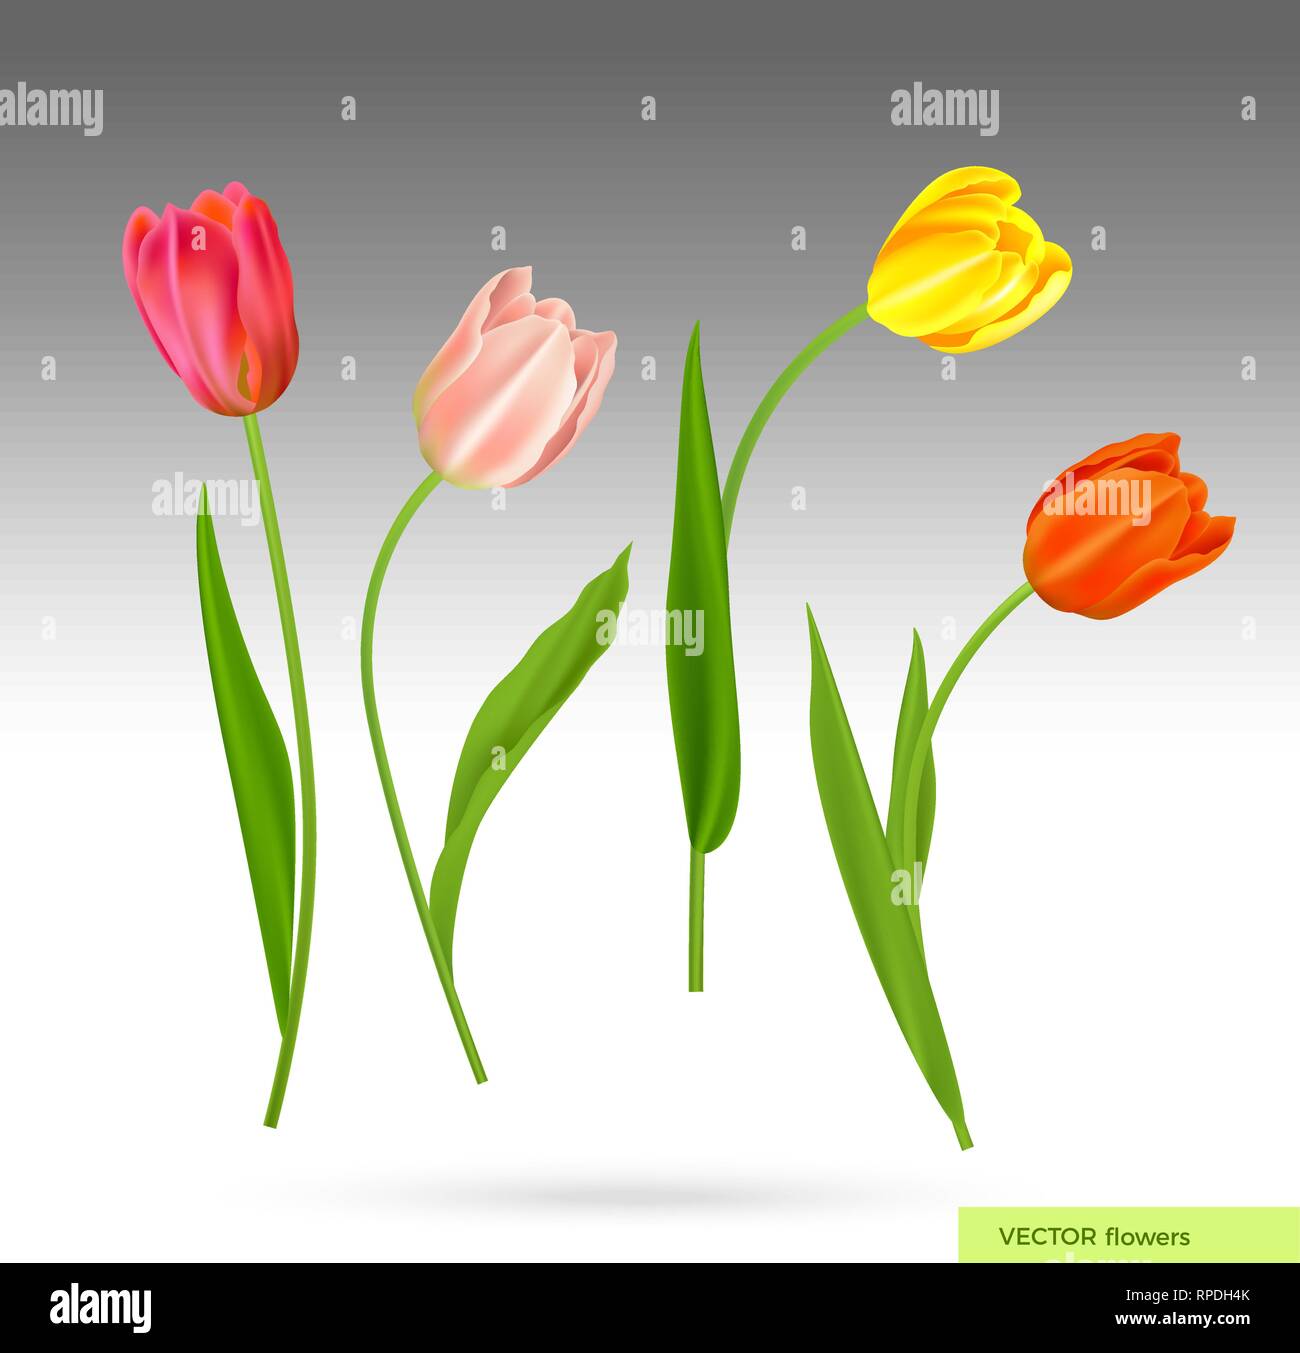 Realistische Vektor bunte Tulpen. Frühling Blumen Hintergrund. Blumenstrauß aus Tulpen isoliert. Stock Vektor